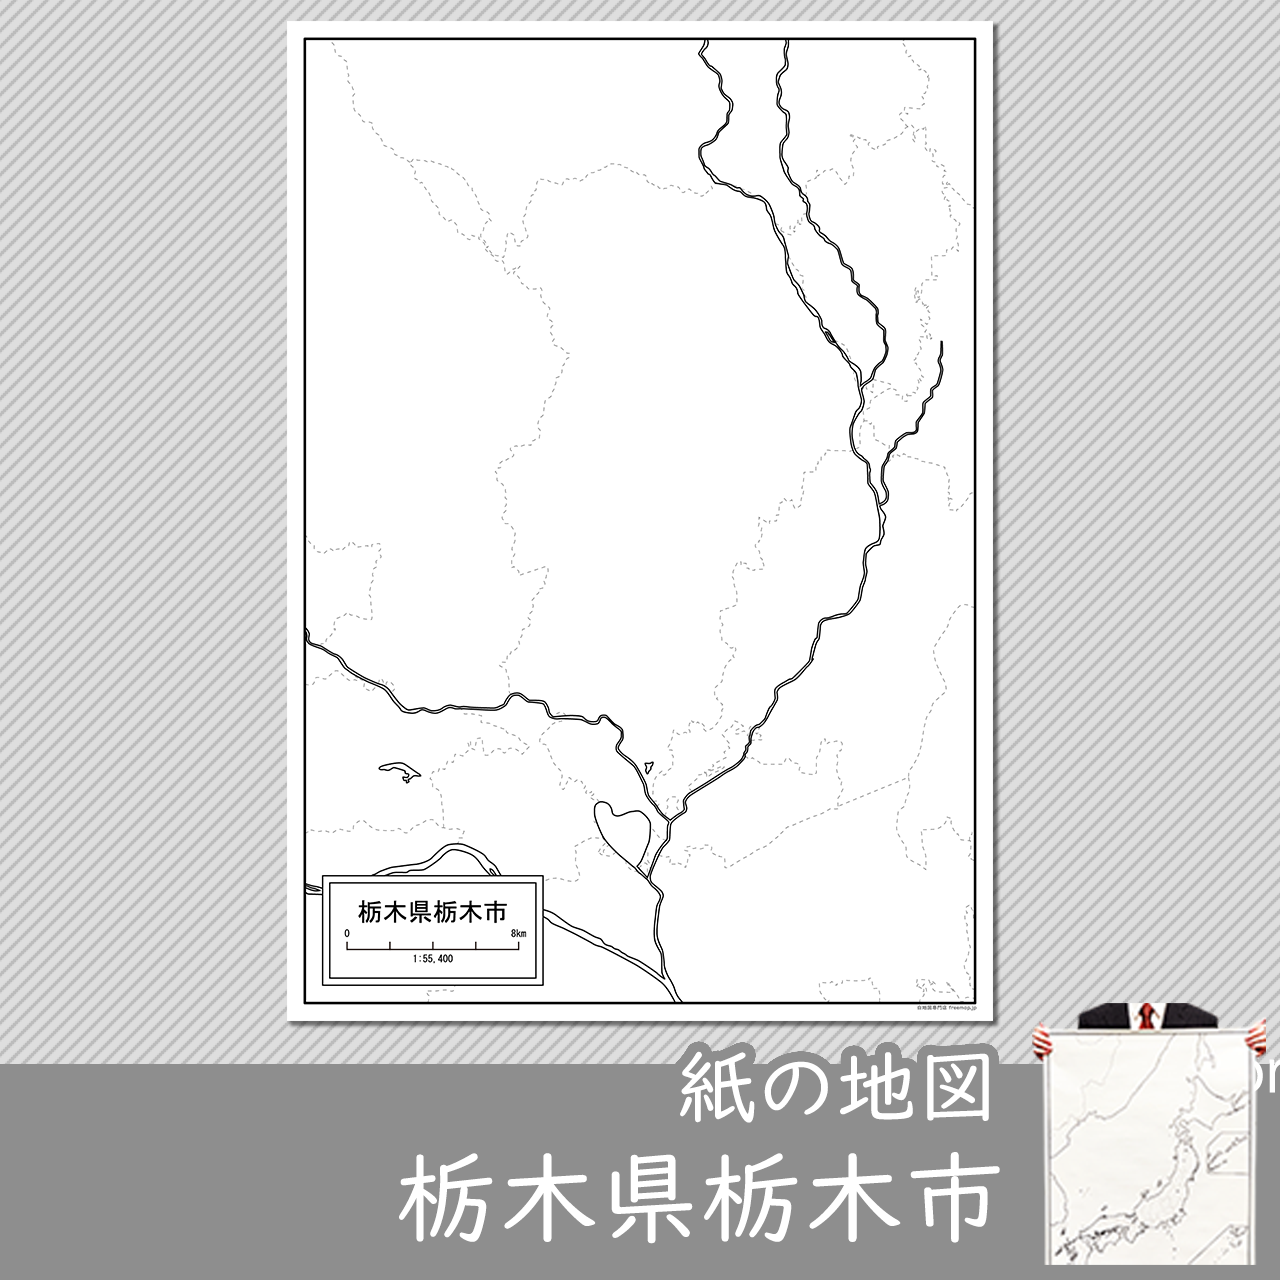 栃木市の紙の白地図のサムネイル